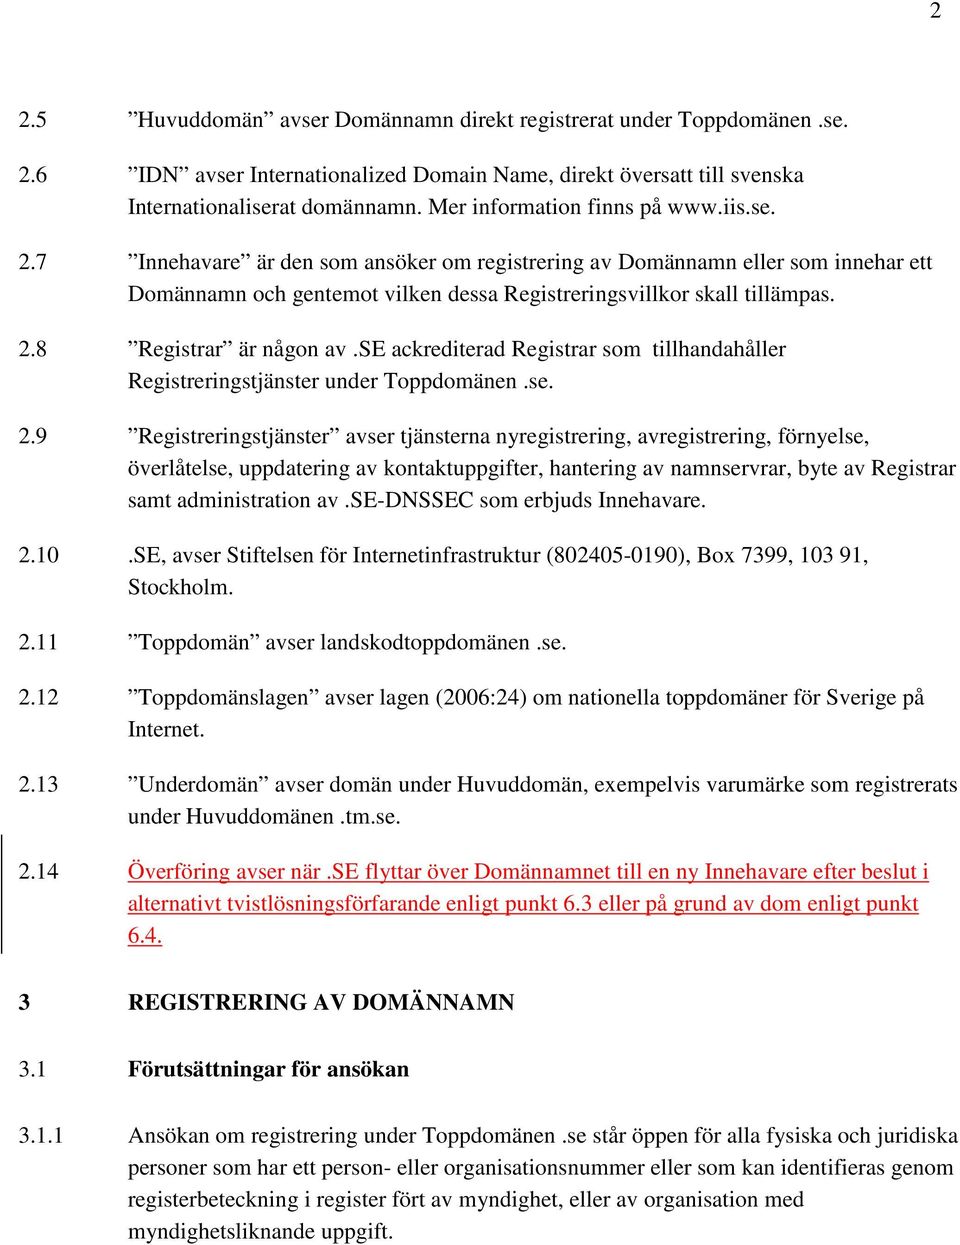 se ackrediterad Registrar som tillhandahåller Registreringstjänster under Toppdomänen.se. 2.